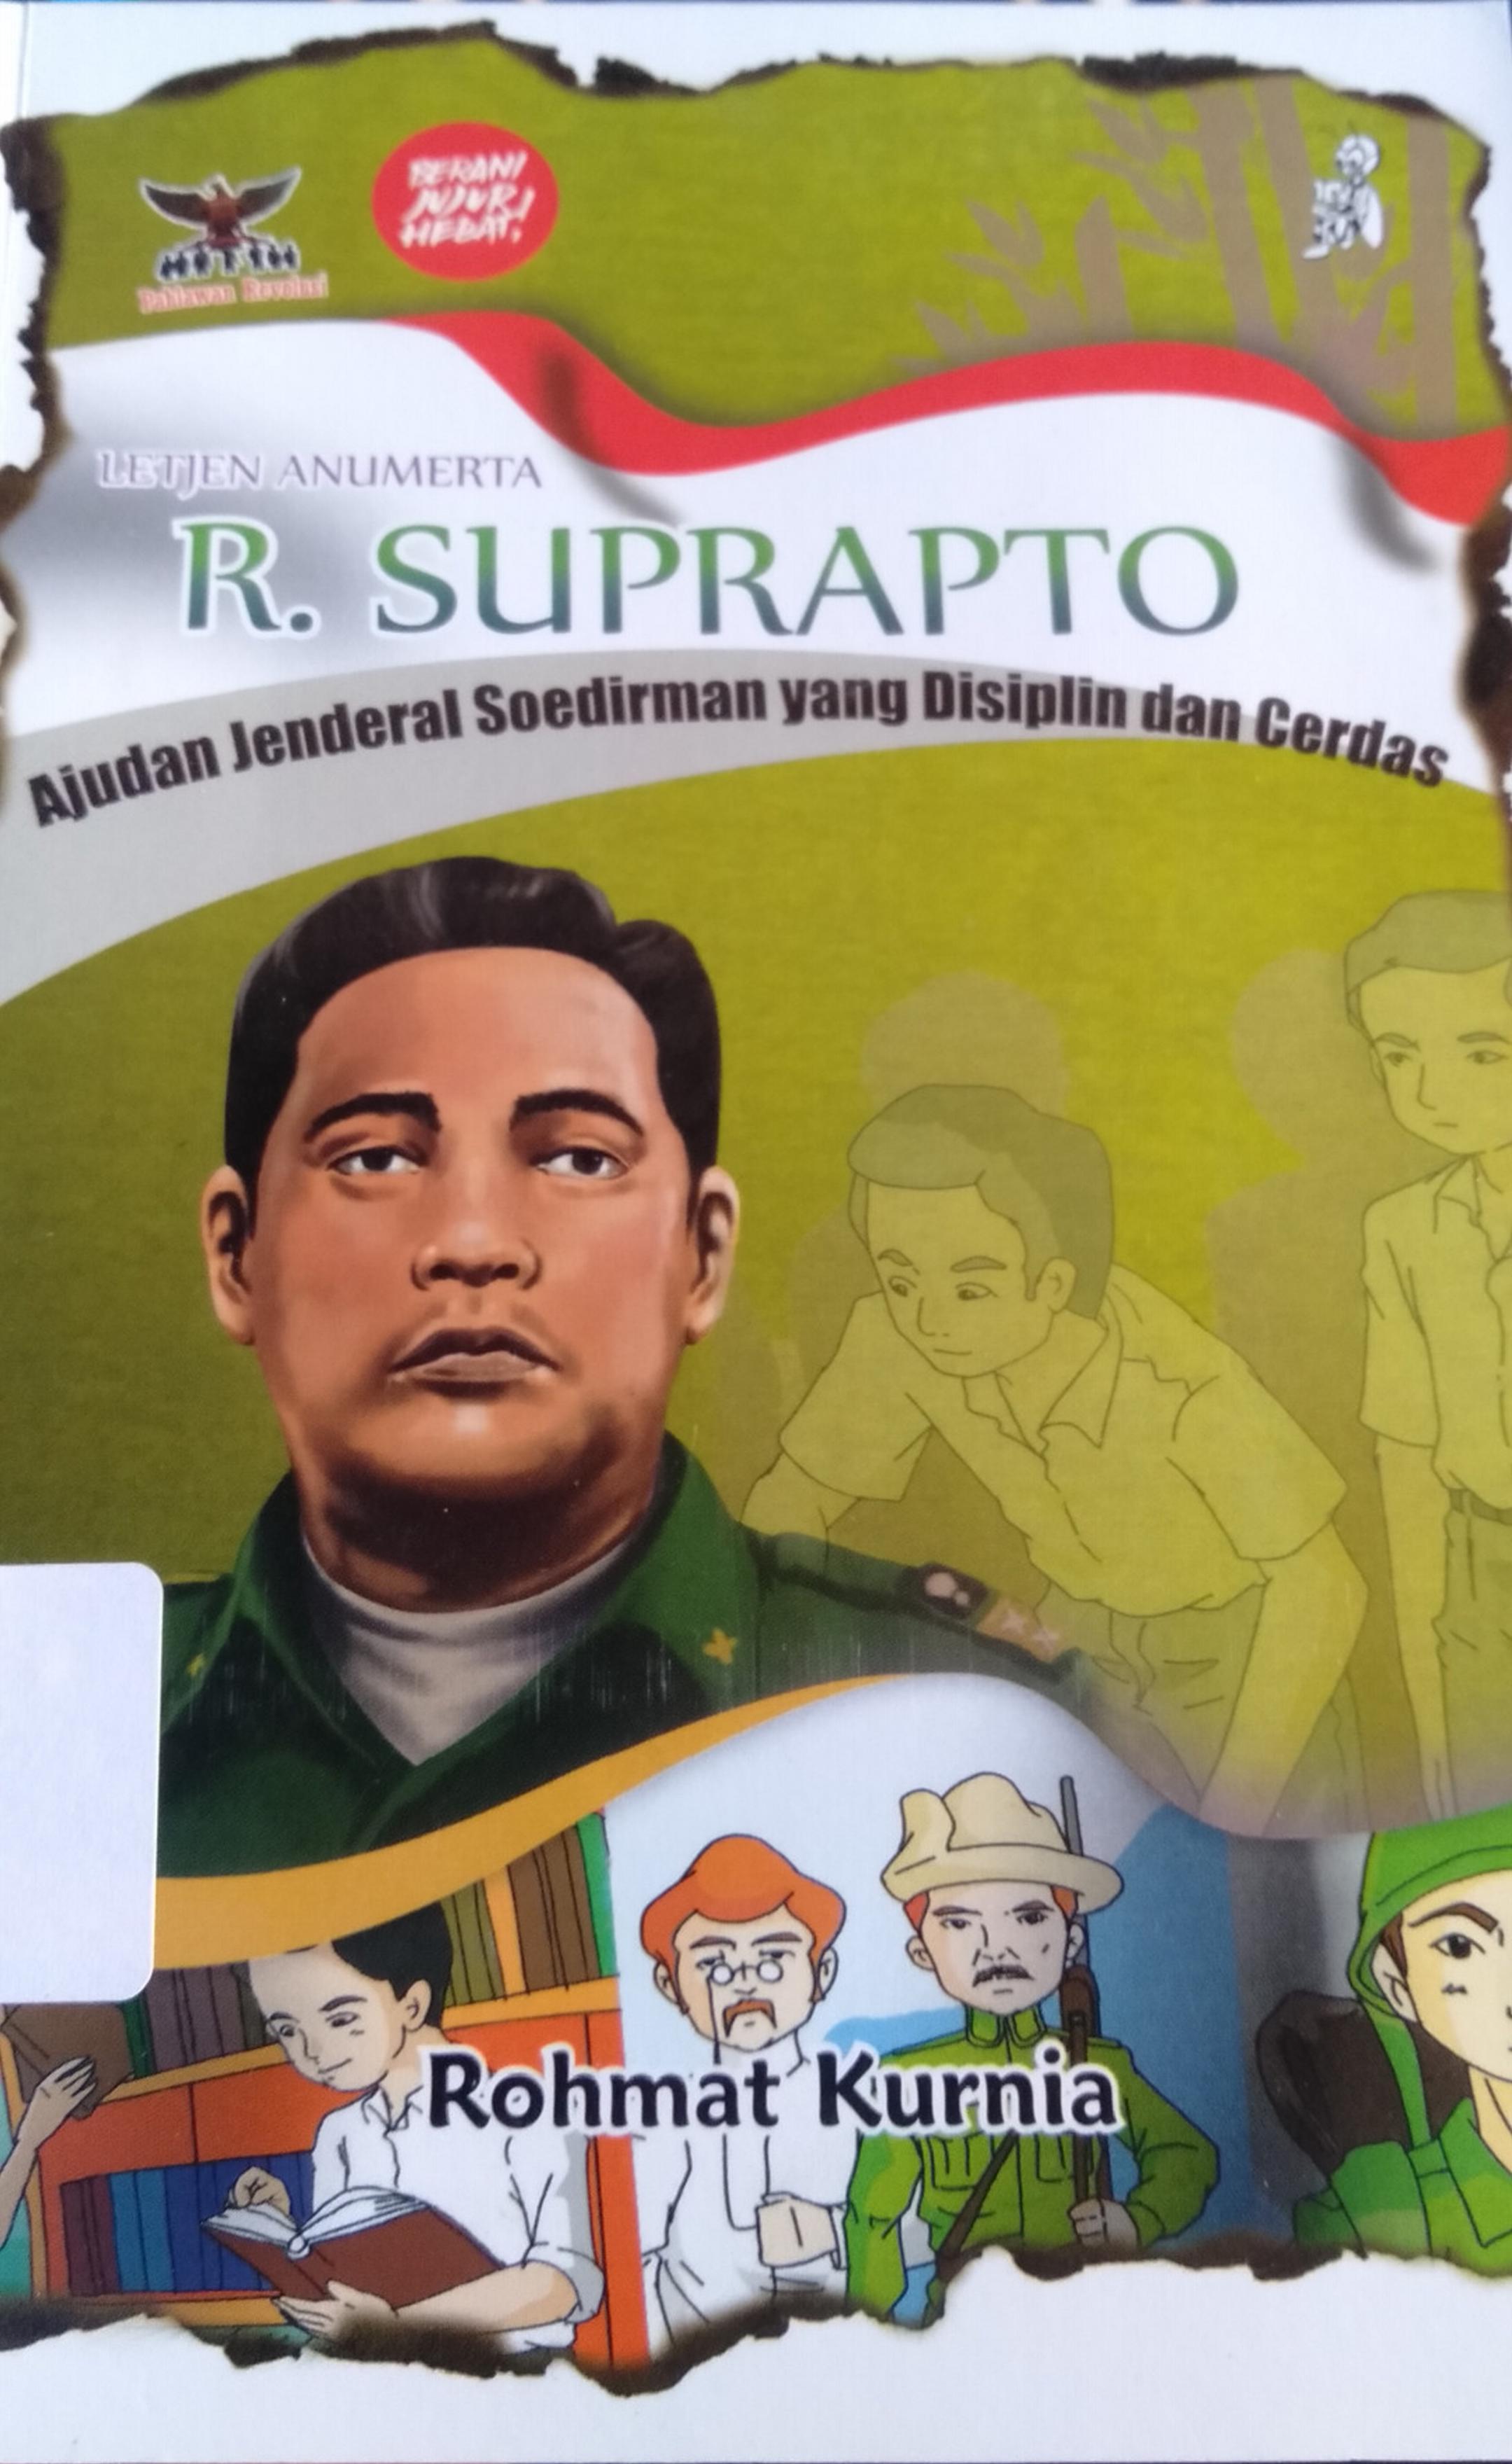 Letjen Anumerta R. Suprapto :  ajudan jenderal soedirman yang disiplin dan cerdas